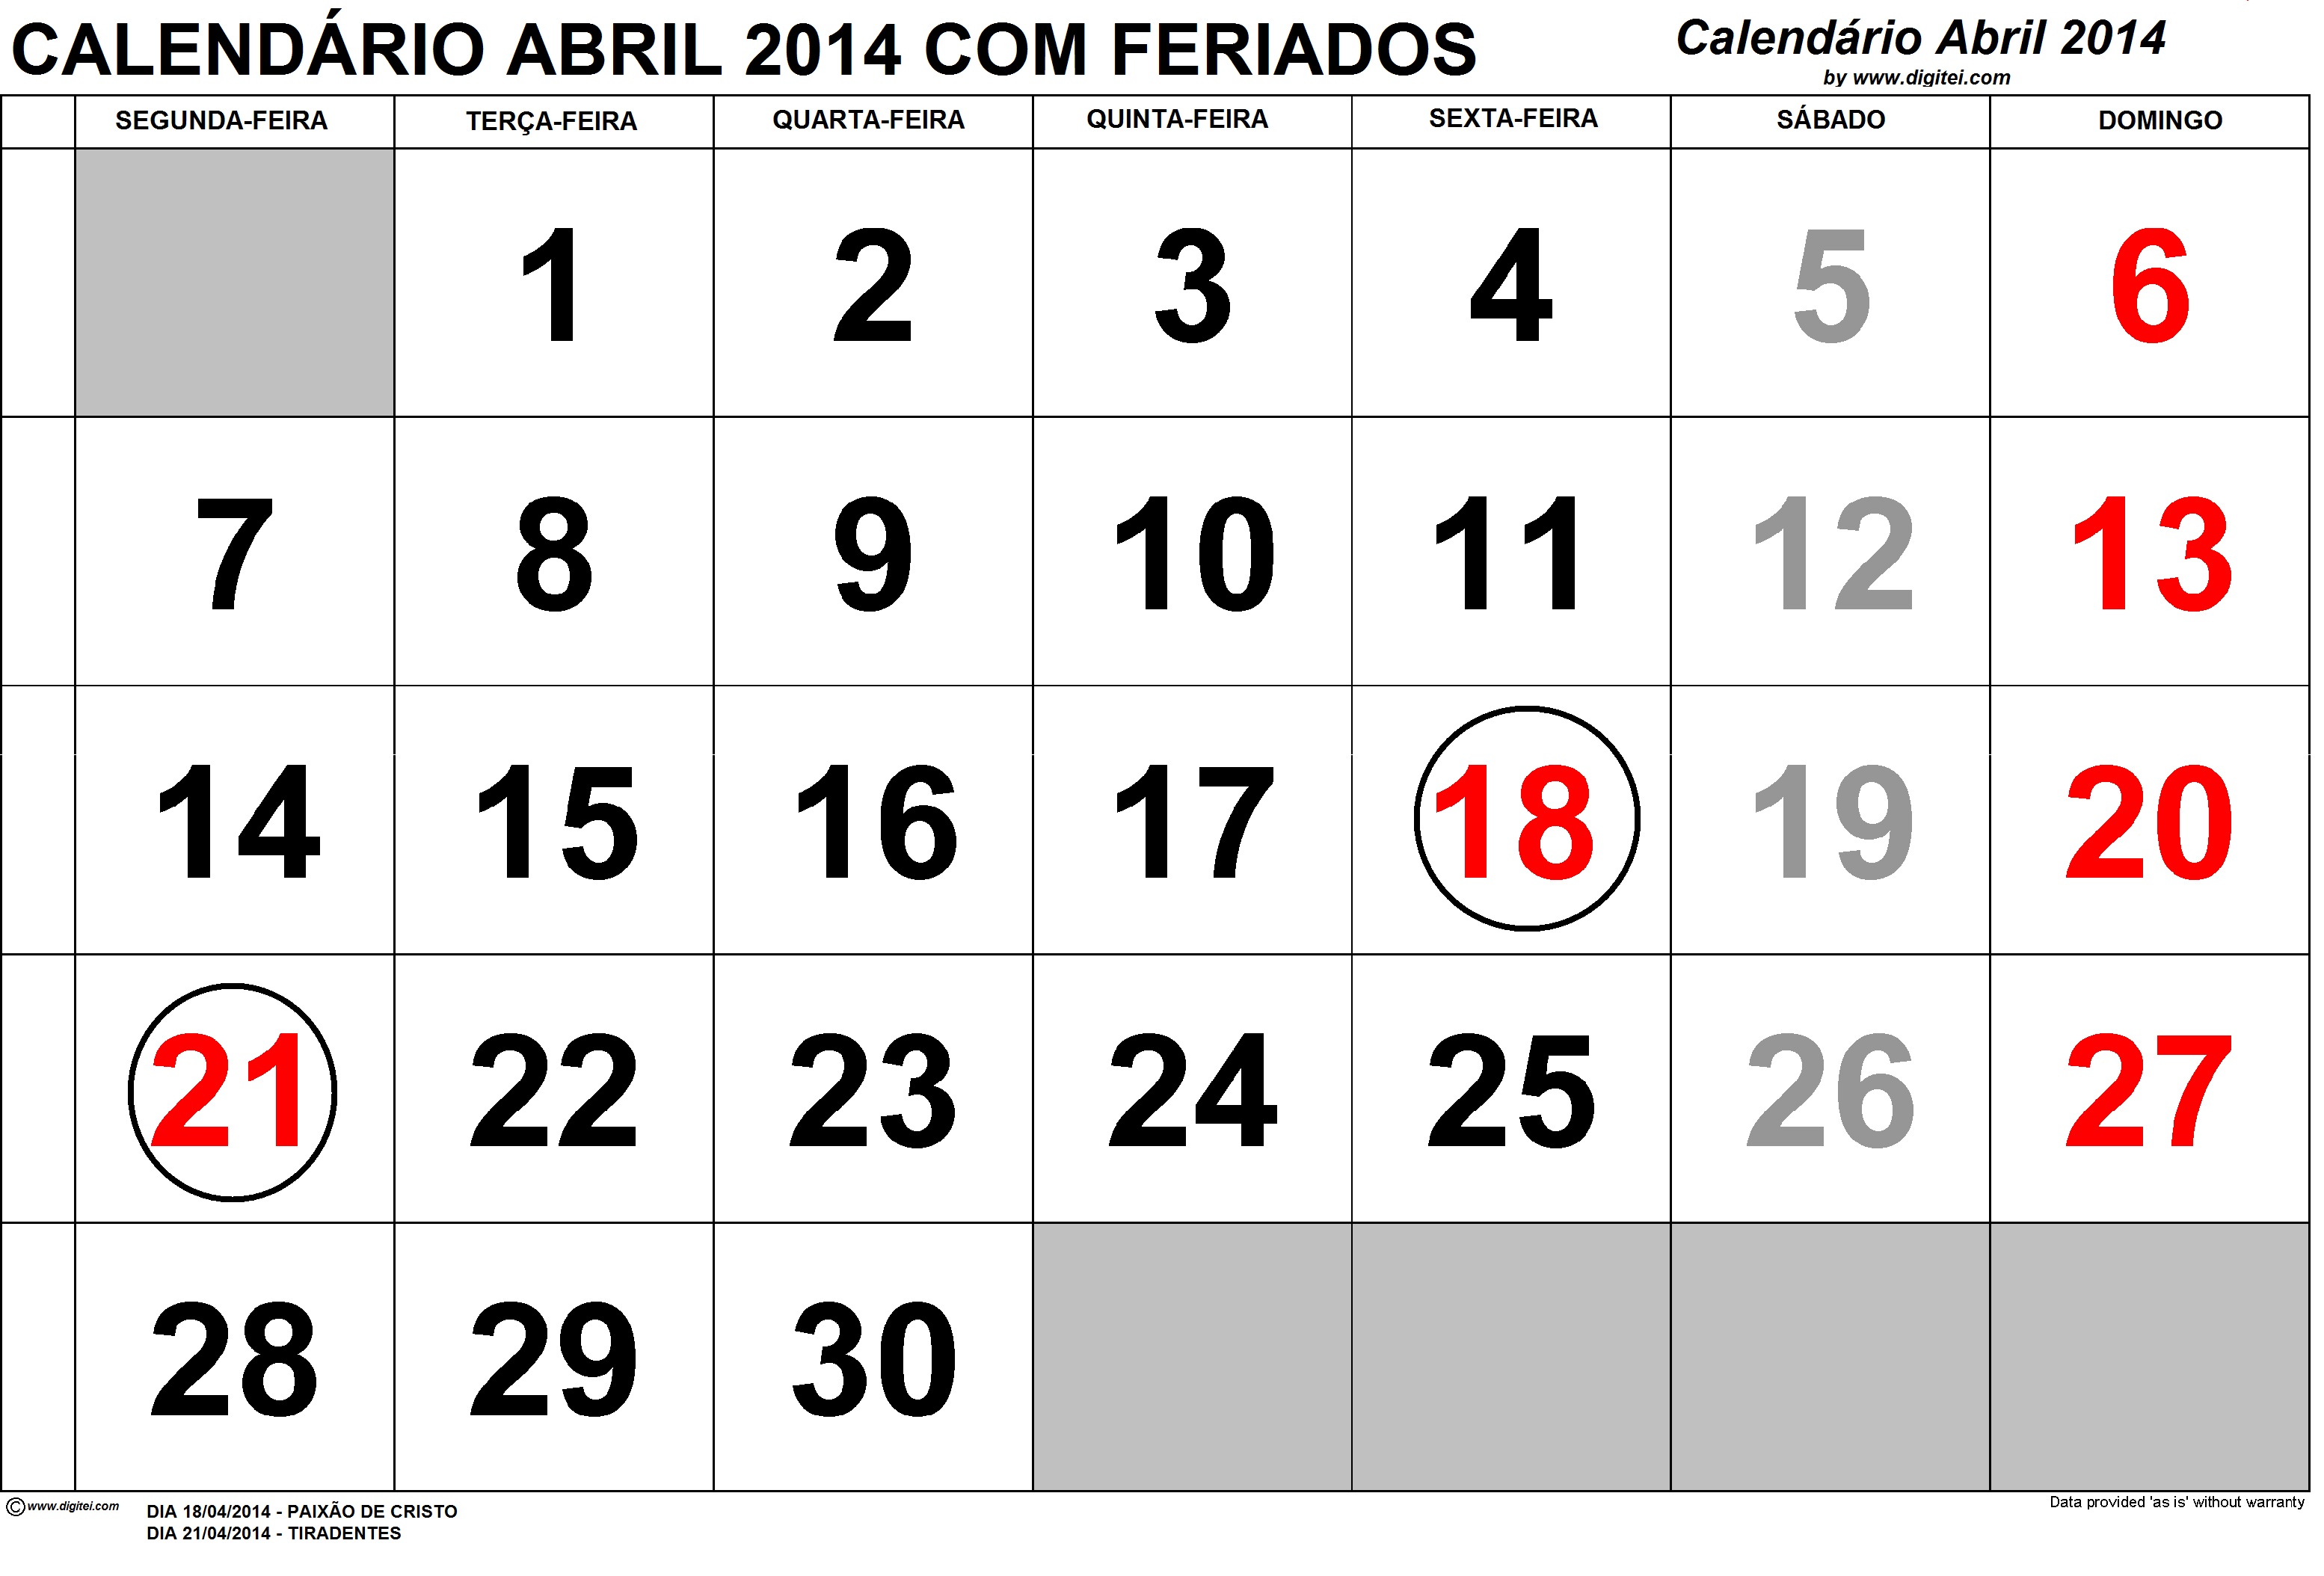 Calendario abril 2014 feriados para imprimir